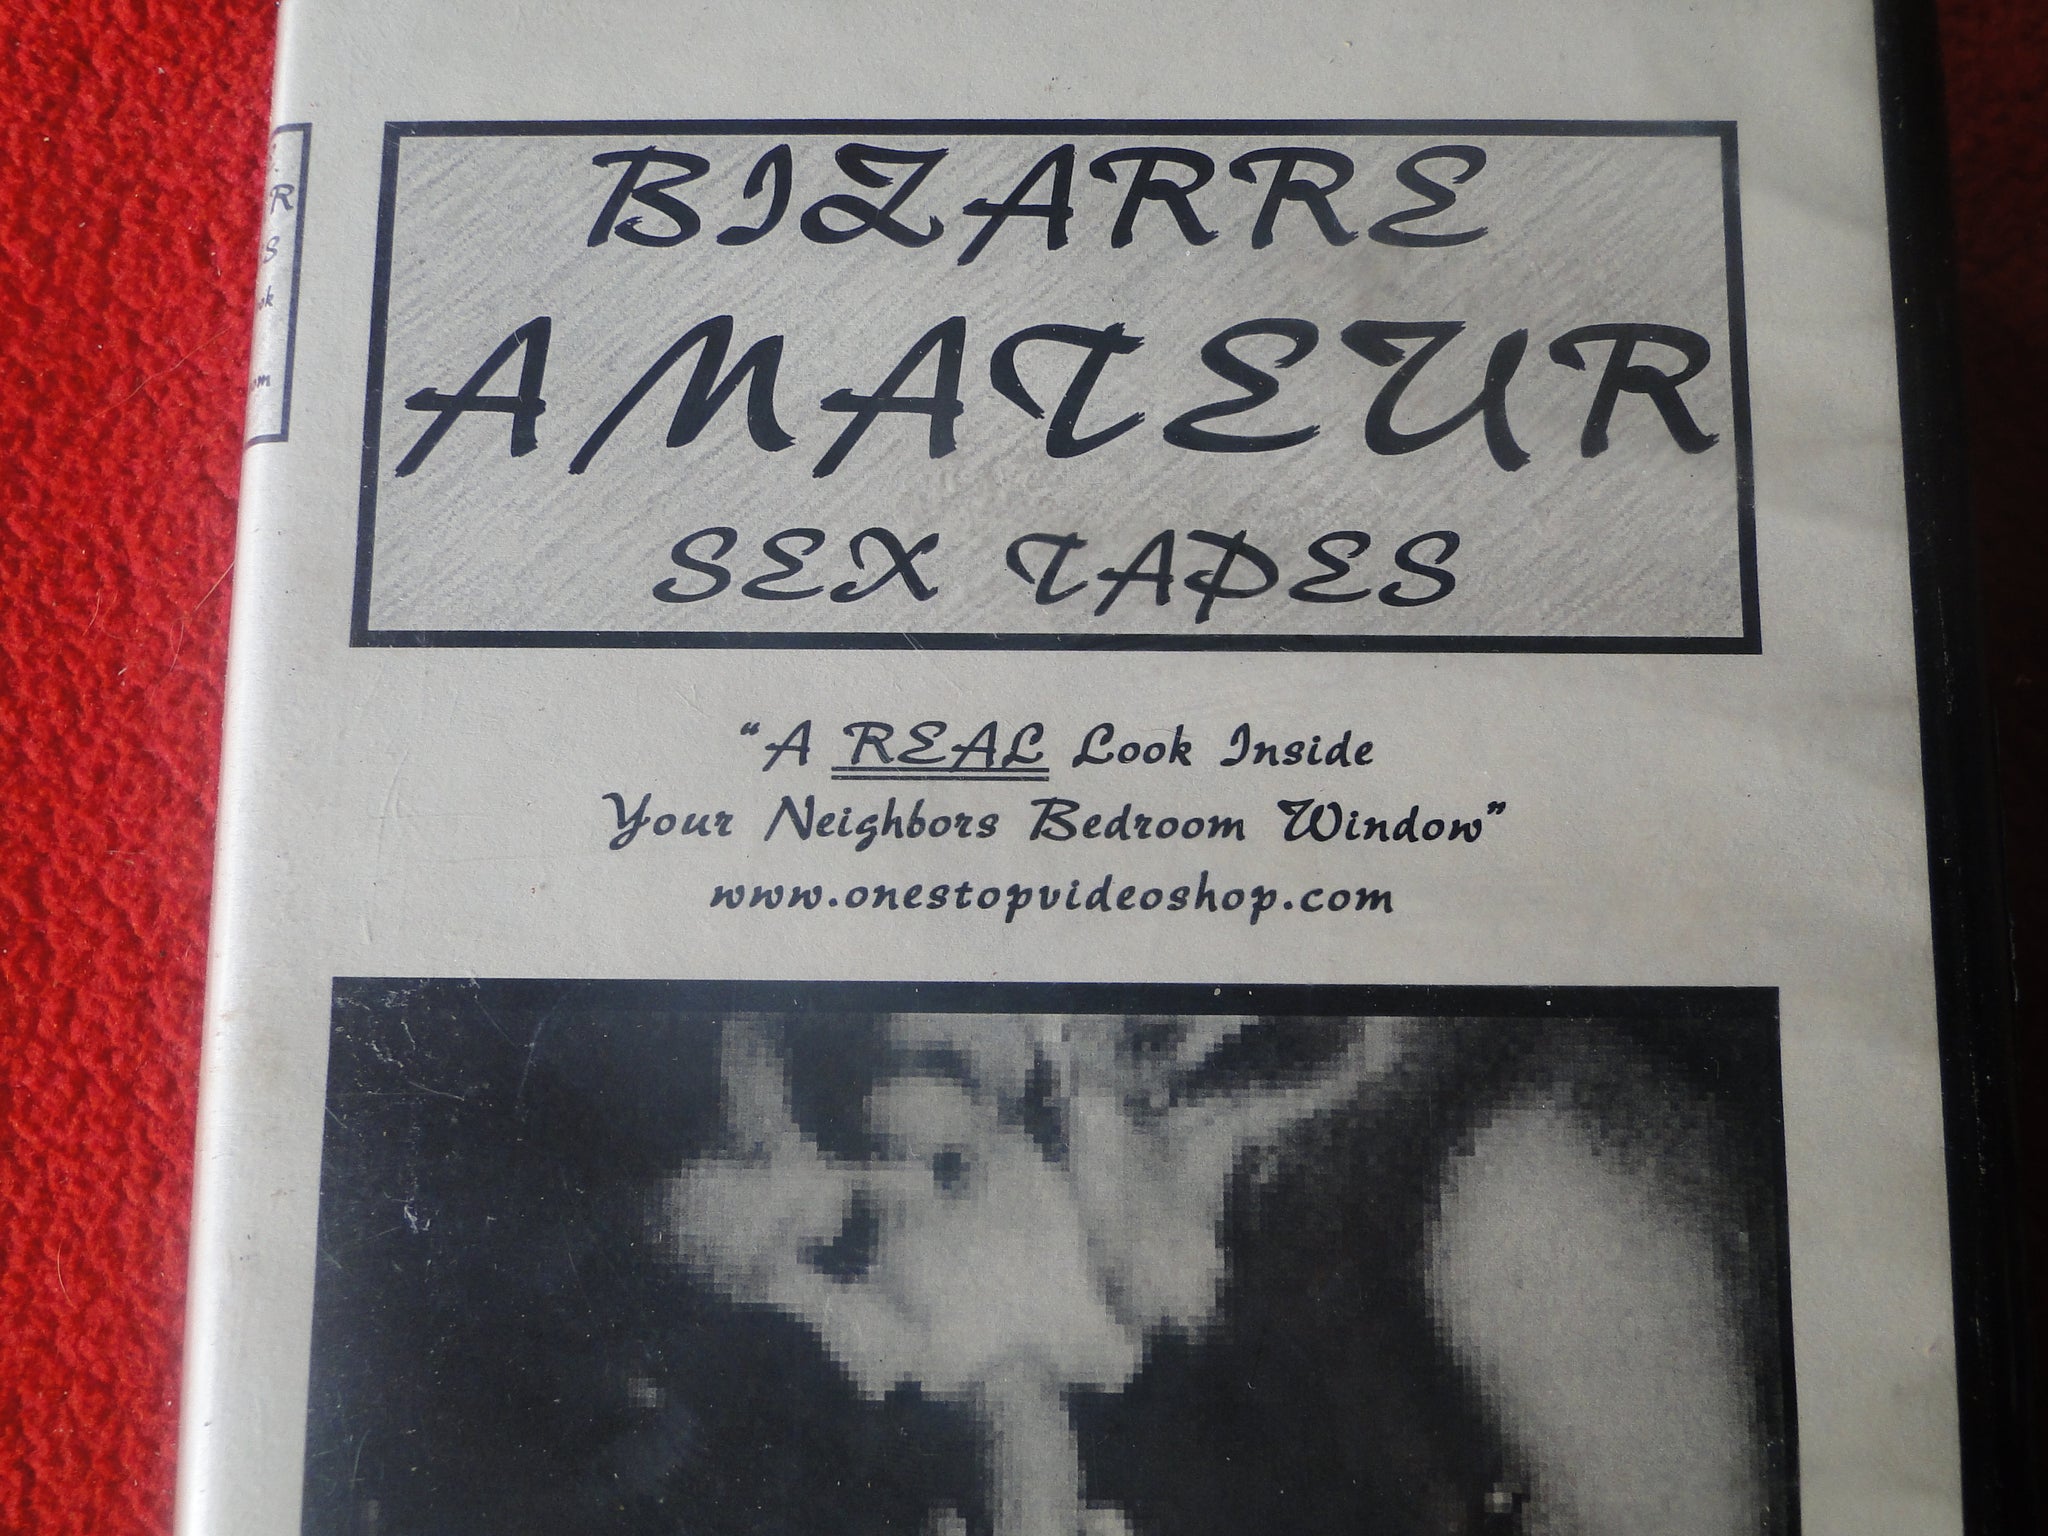 Vintage Adult XXX VHS Porn Tape Bizarre Amateur Sex Tapes Classic Stag pic